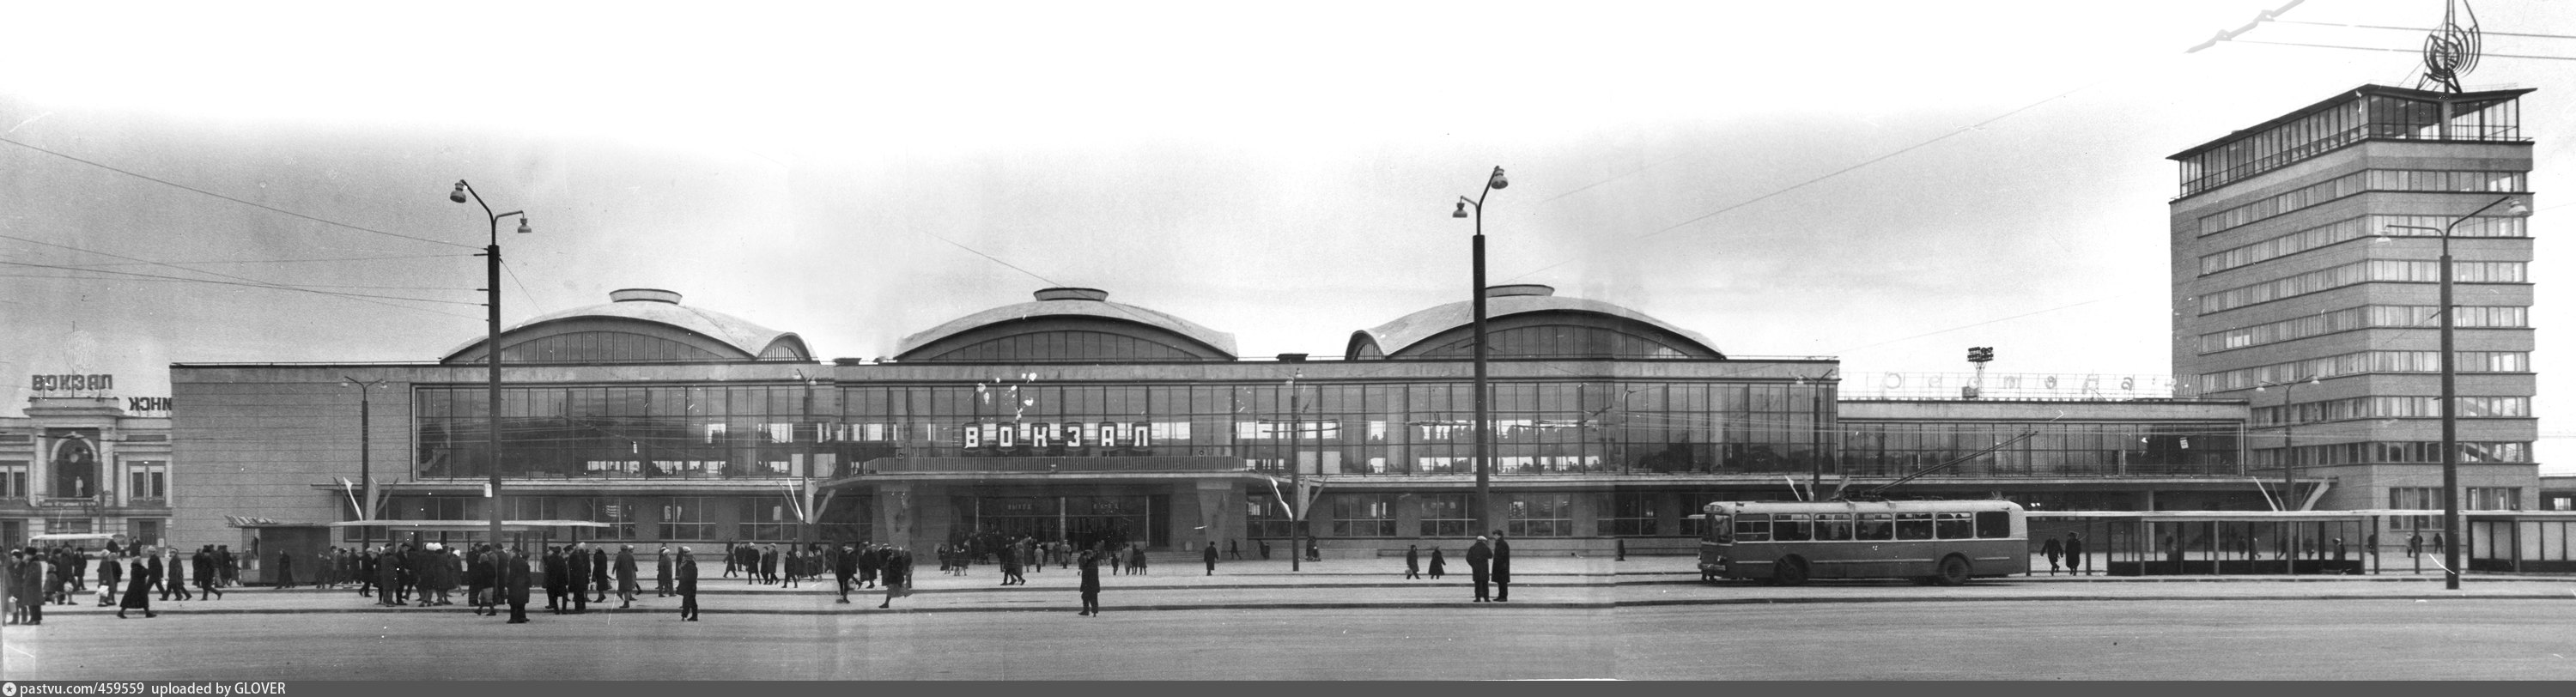 челябинск главный жд вокзал